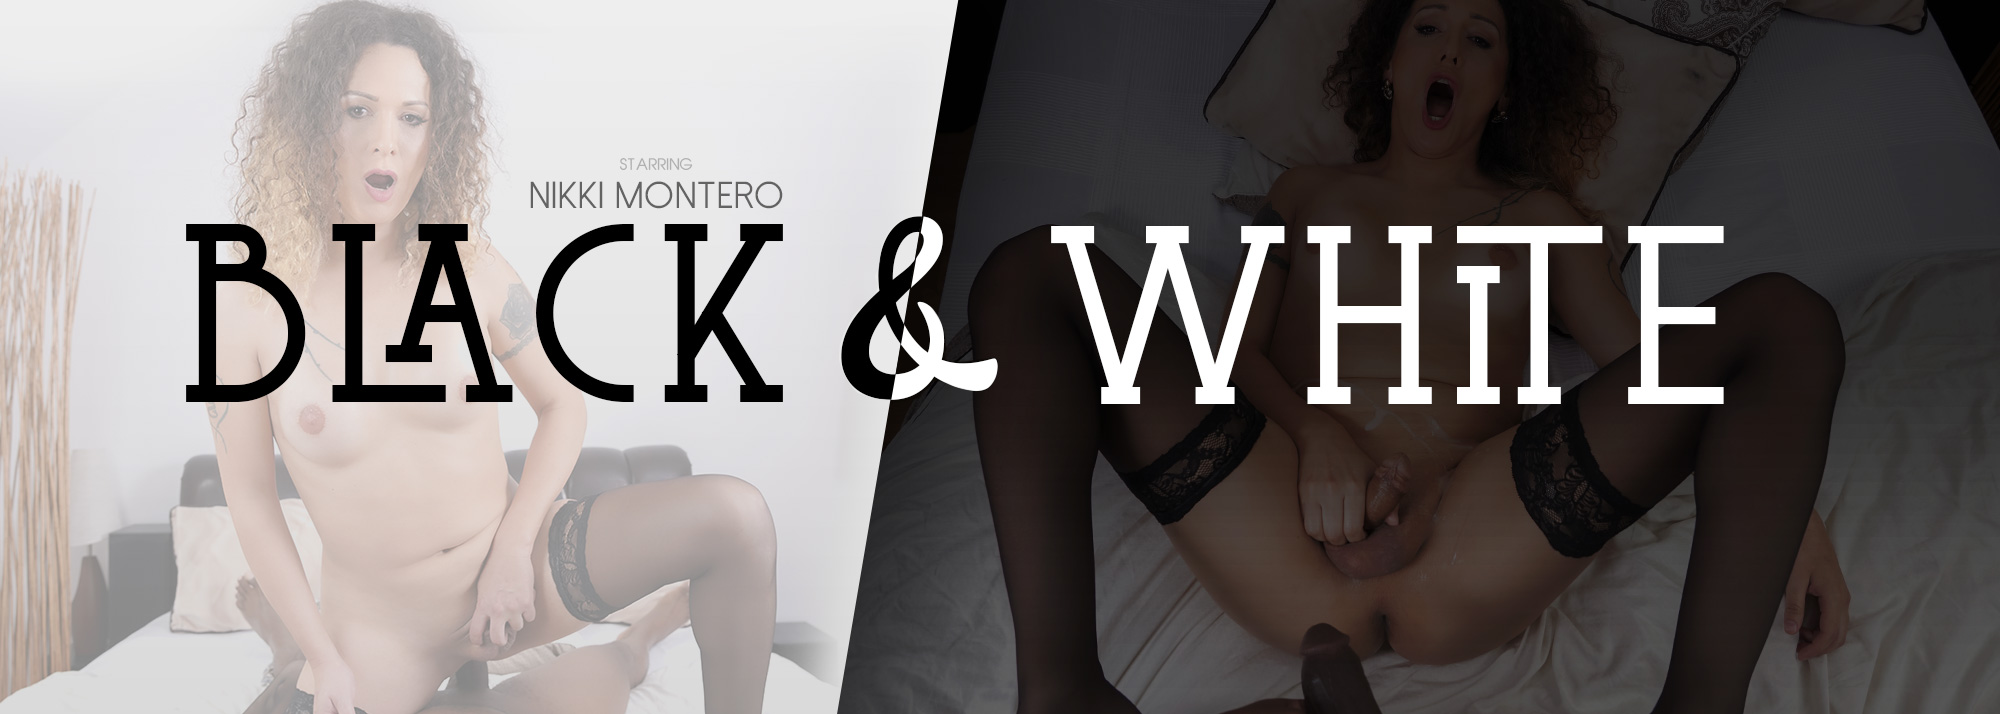 Black and White - VR Porn Video, Starring Nikki Montero VR